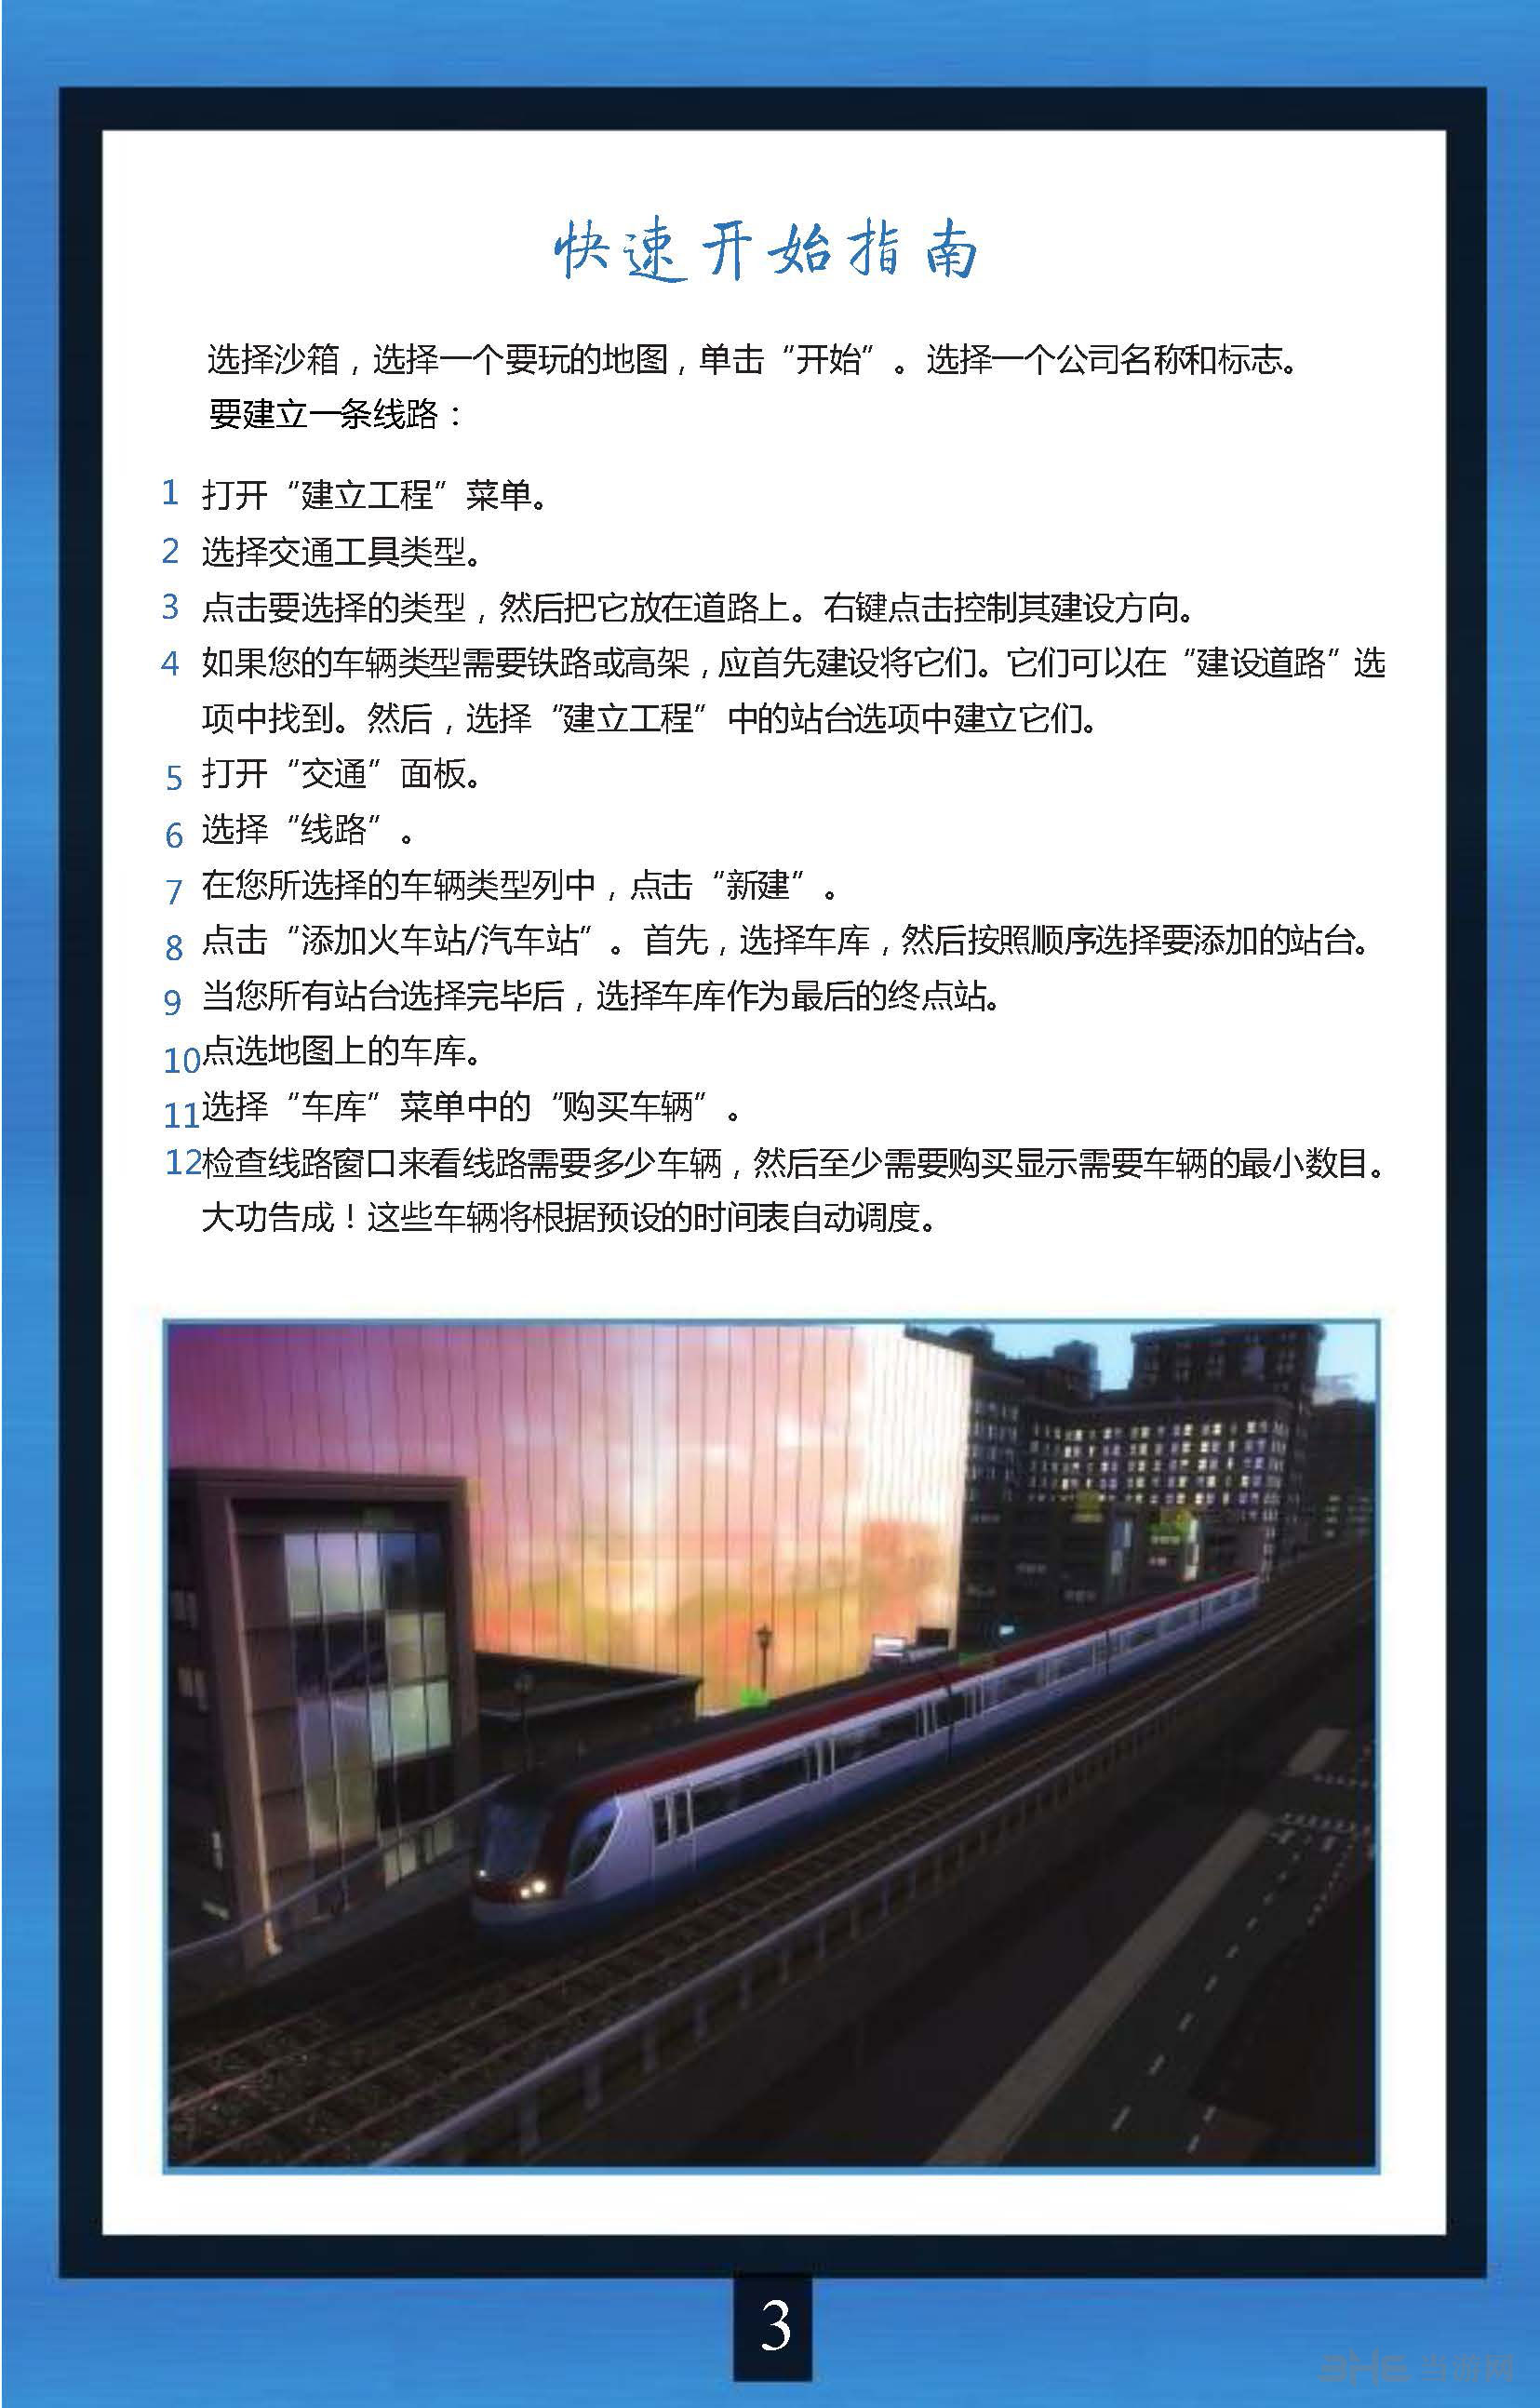 都市运输2官方中文指南